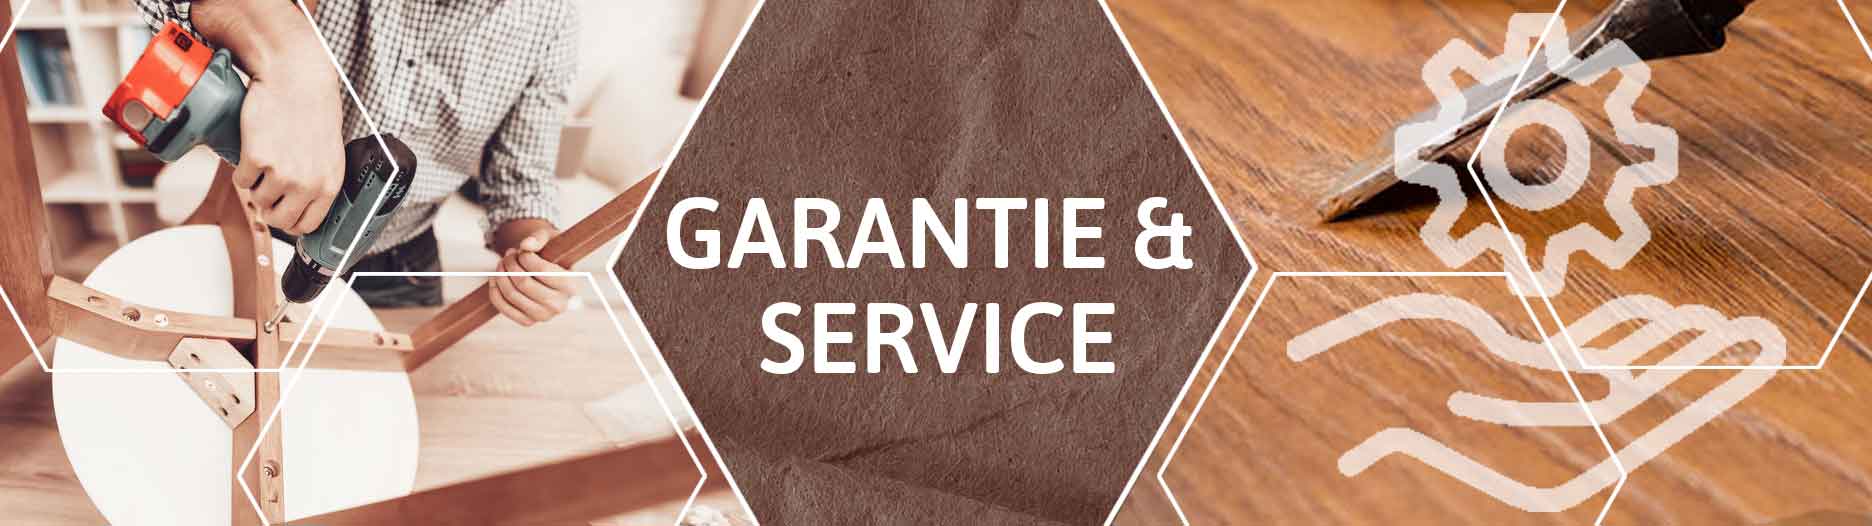 Service & garantie bij Home Center